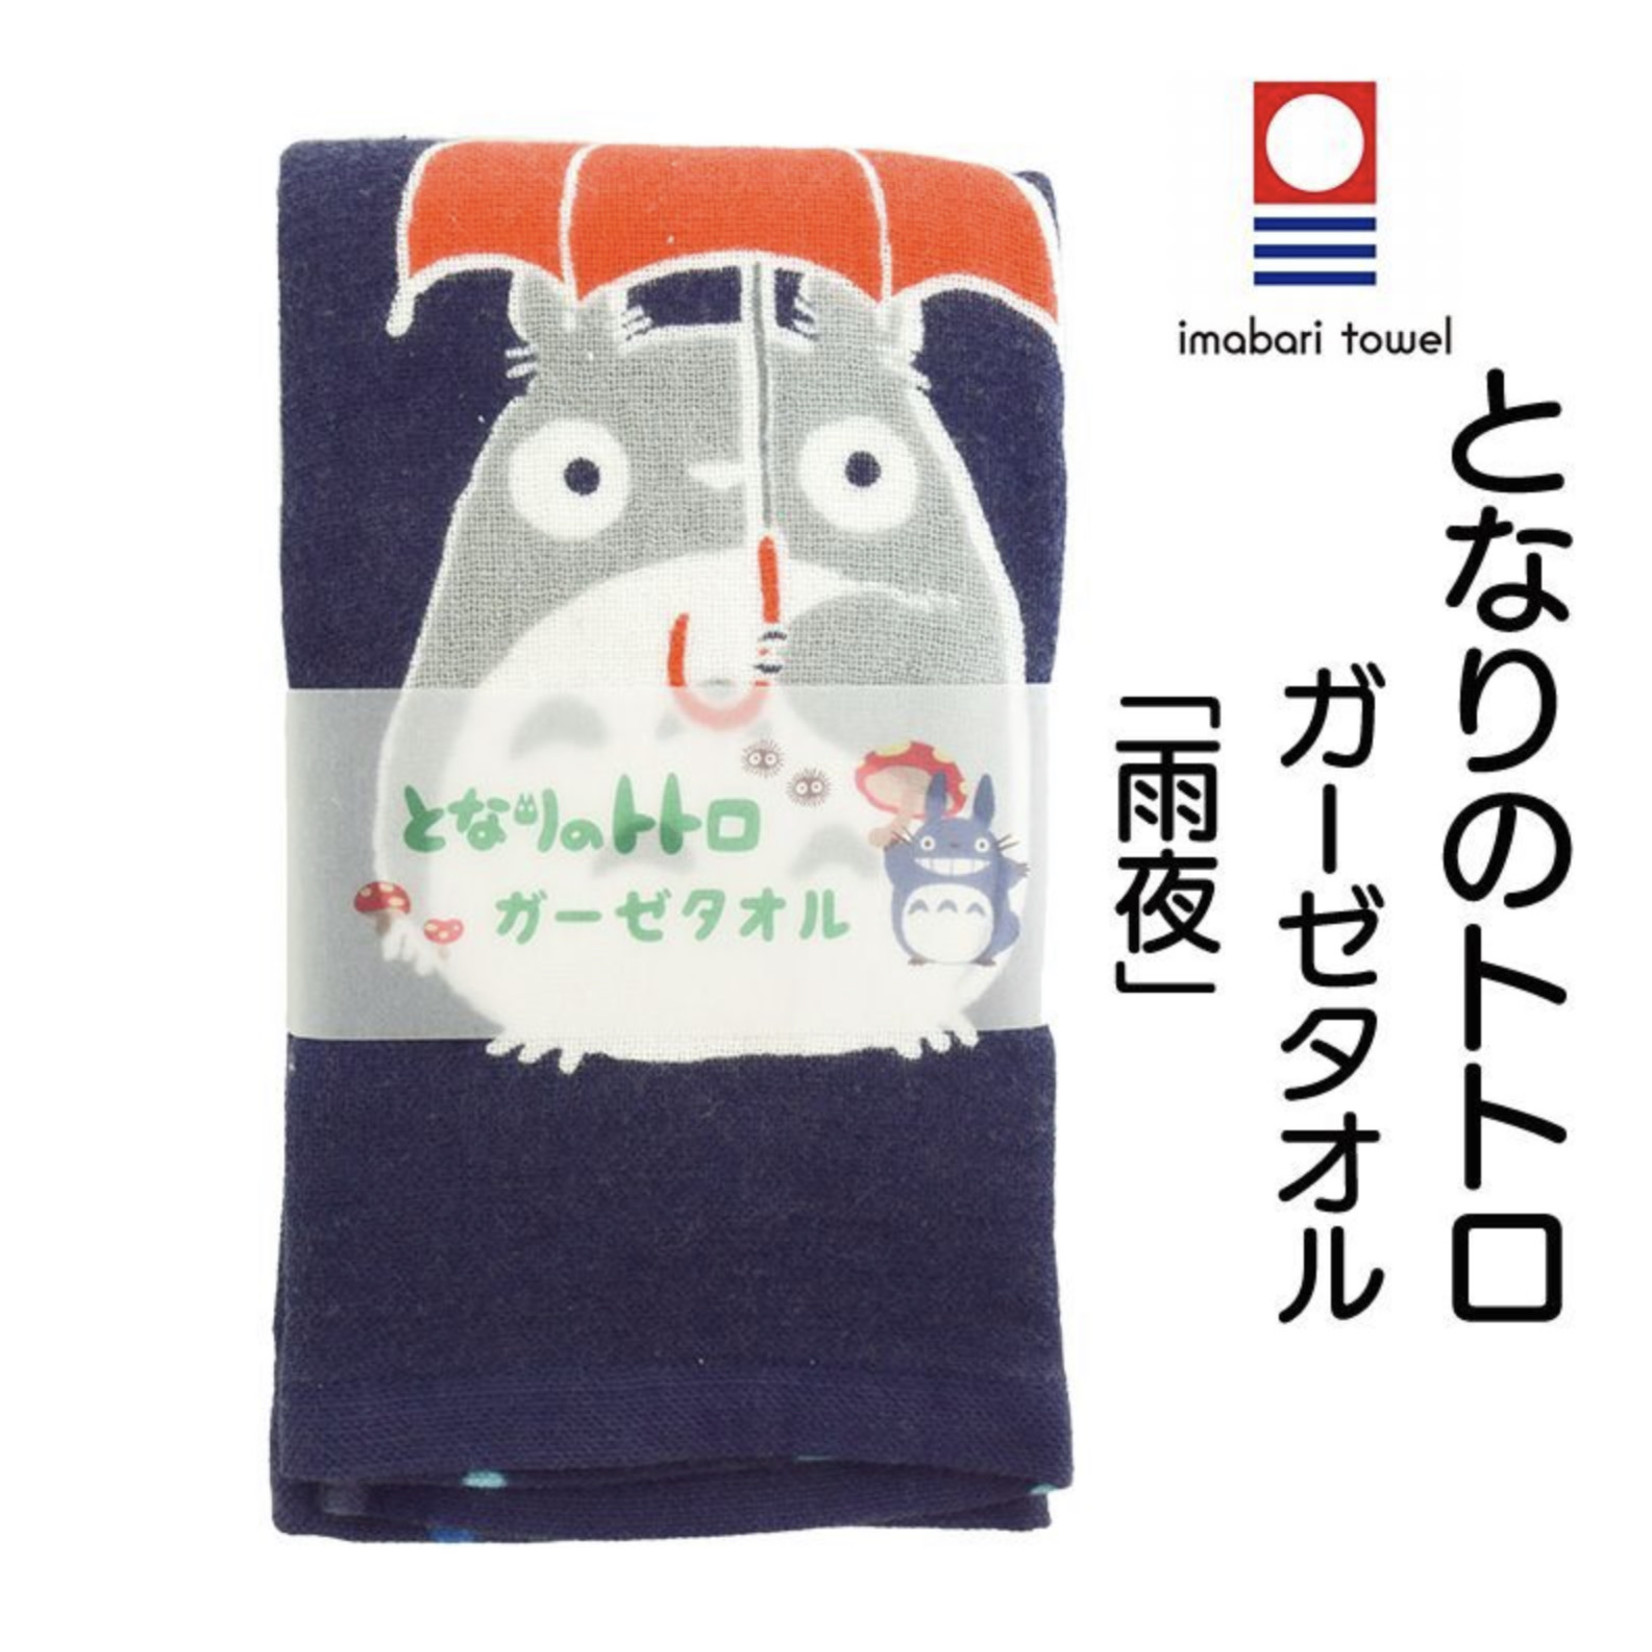 imabari towel Totoro Rainy Evening Towel